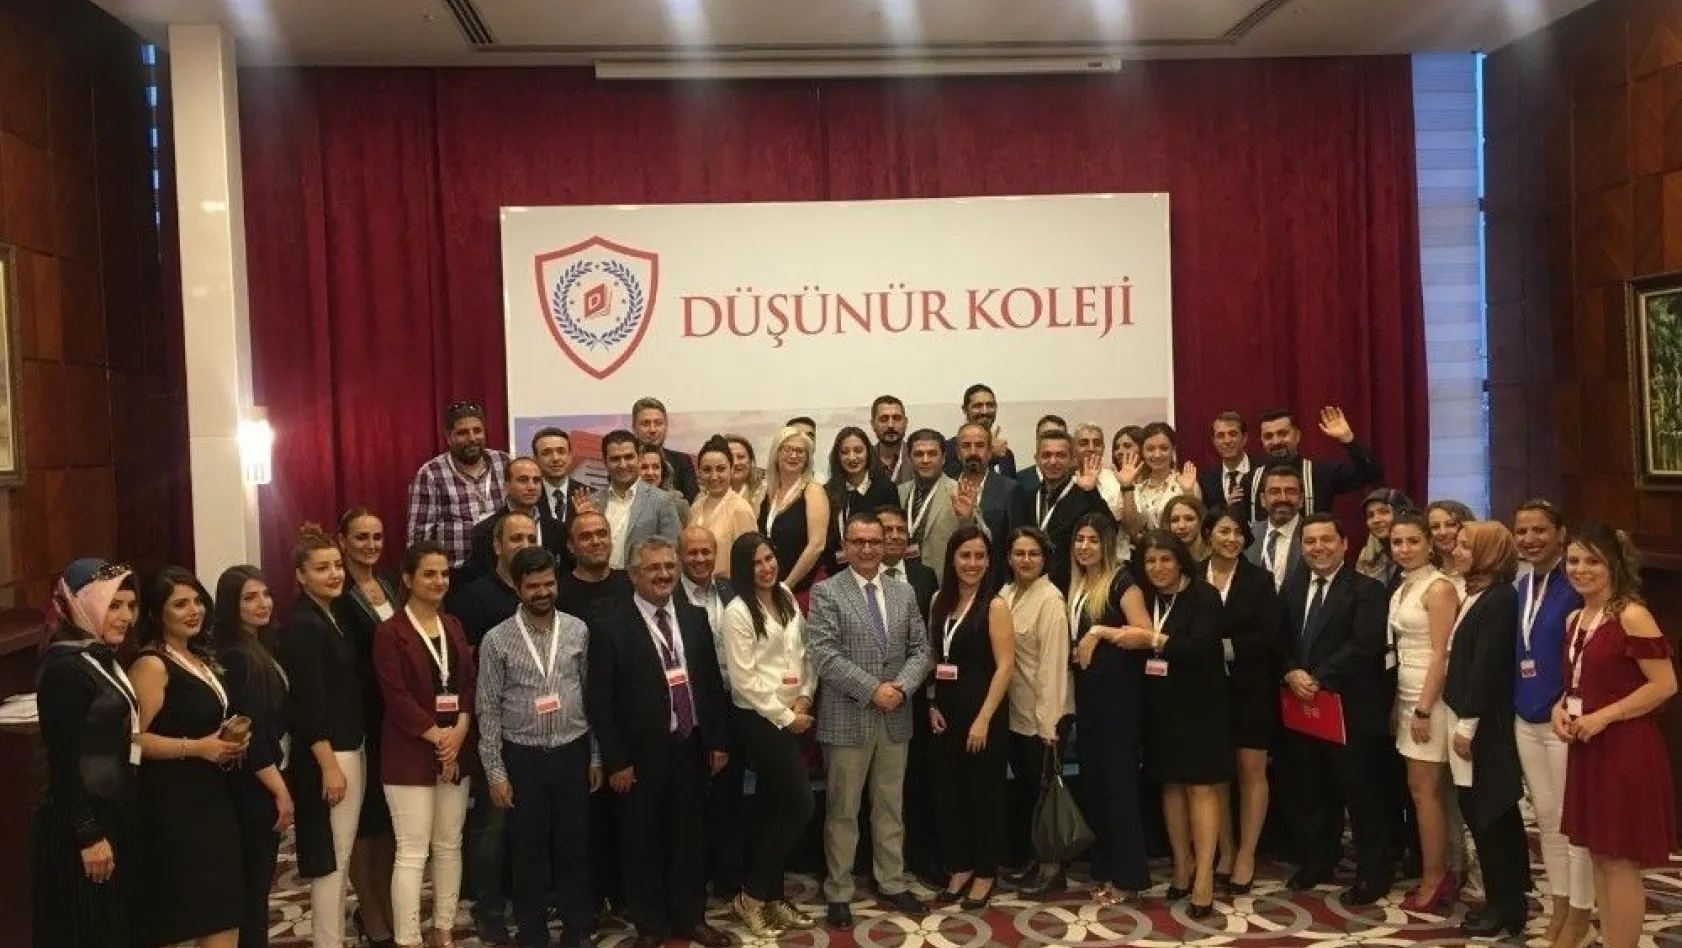 Düşünür Koleji Diyarbakır Kampüsü'nün tanıtım toplantısını yaptı
